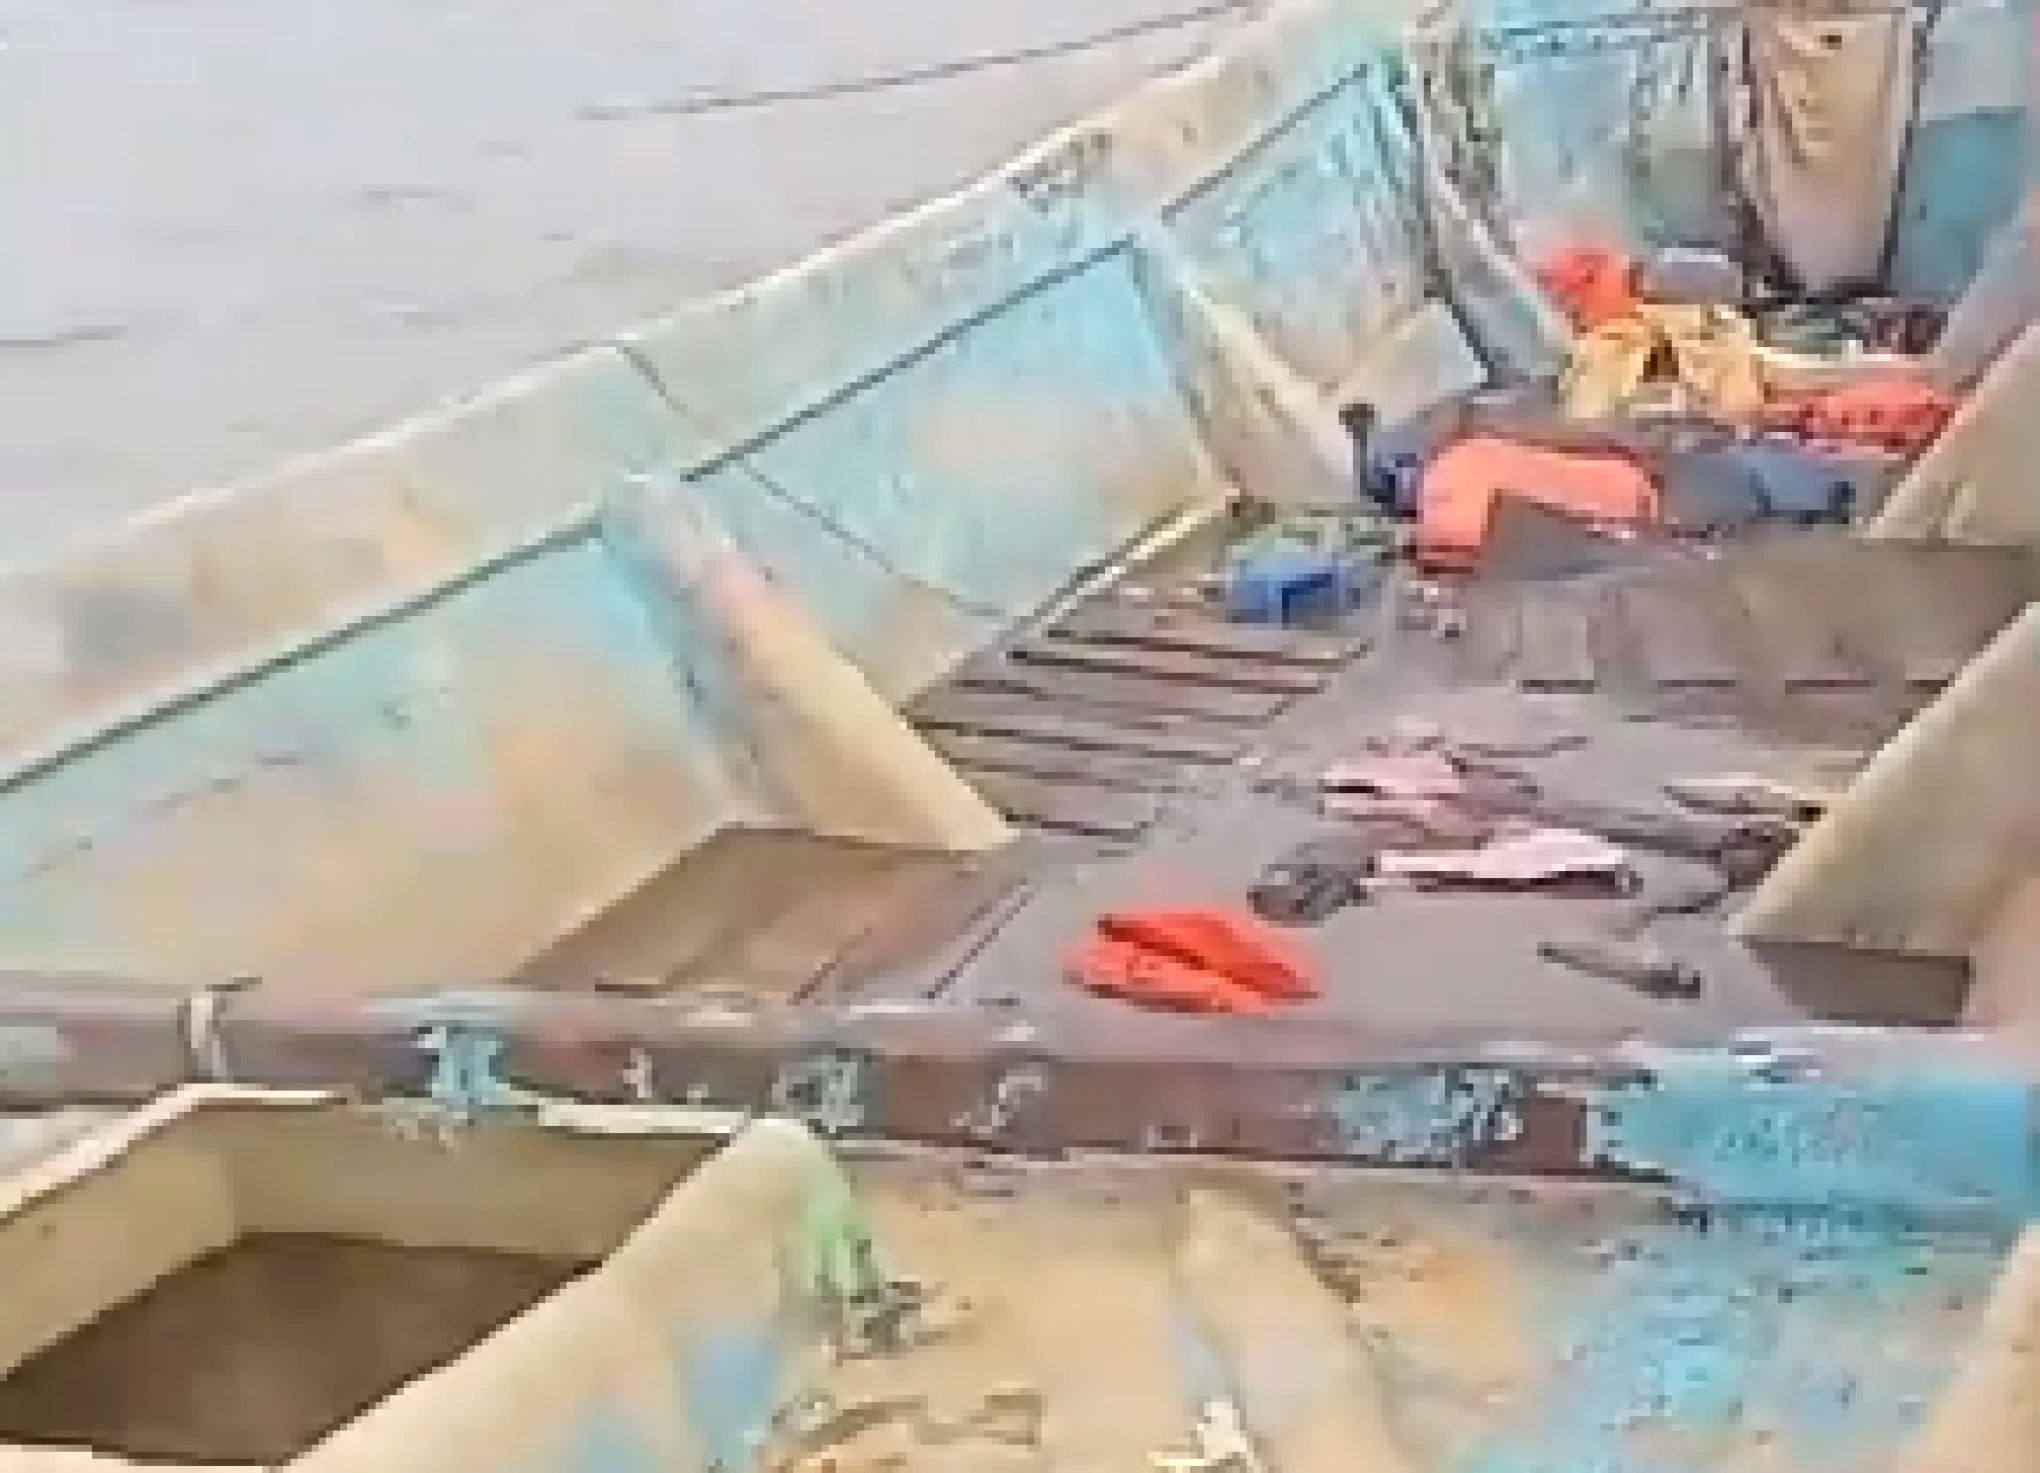 Corpos em decomposição são encontrados em um barco no Pará | abc+